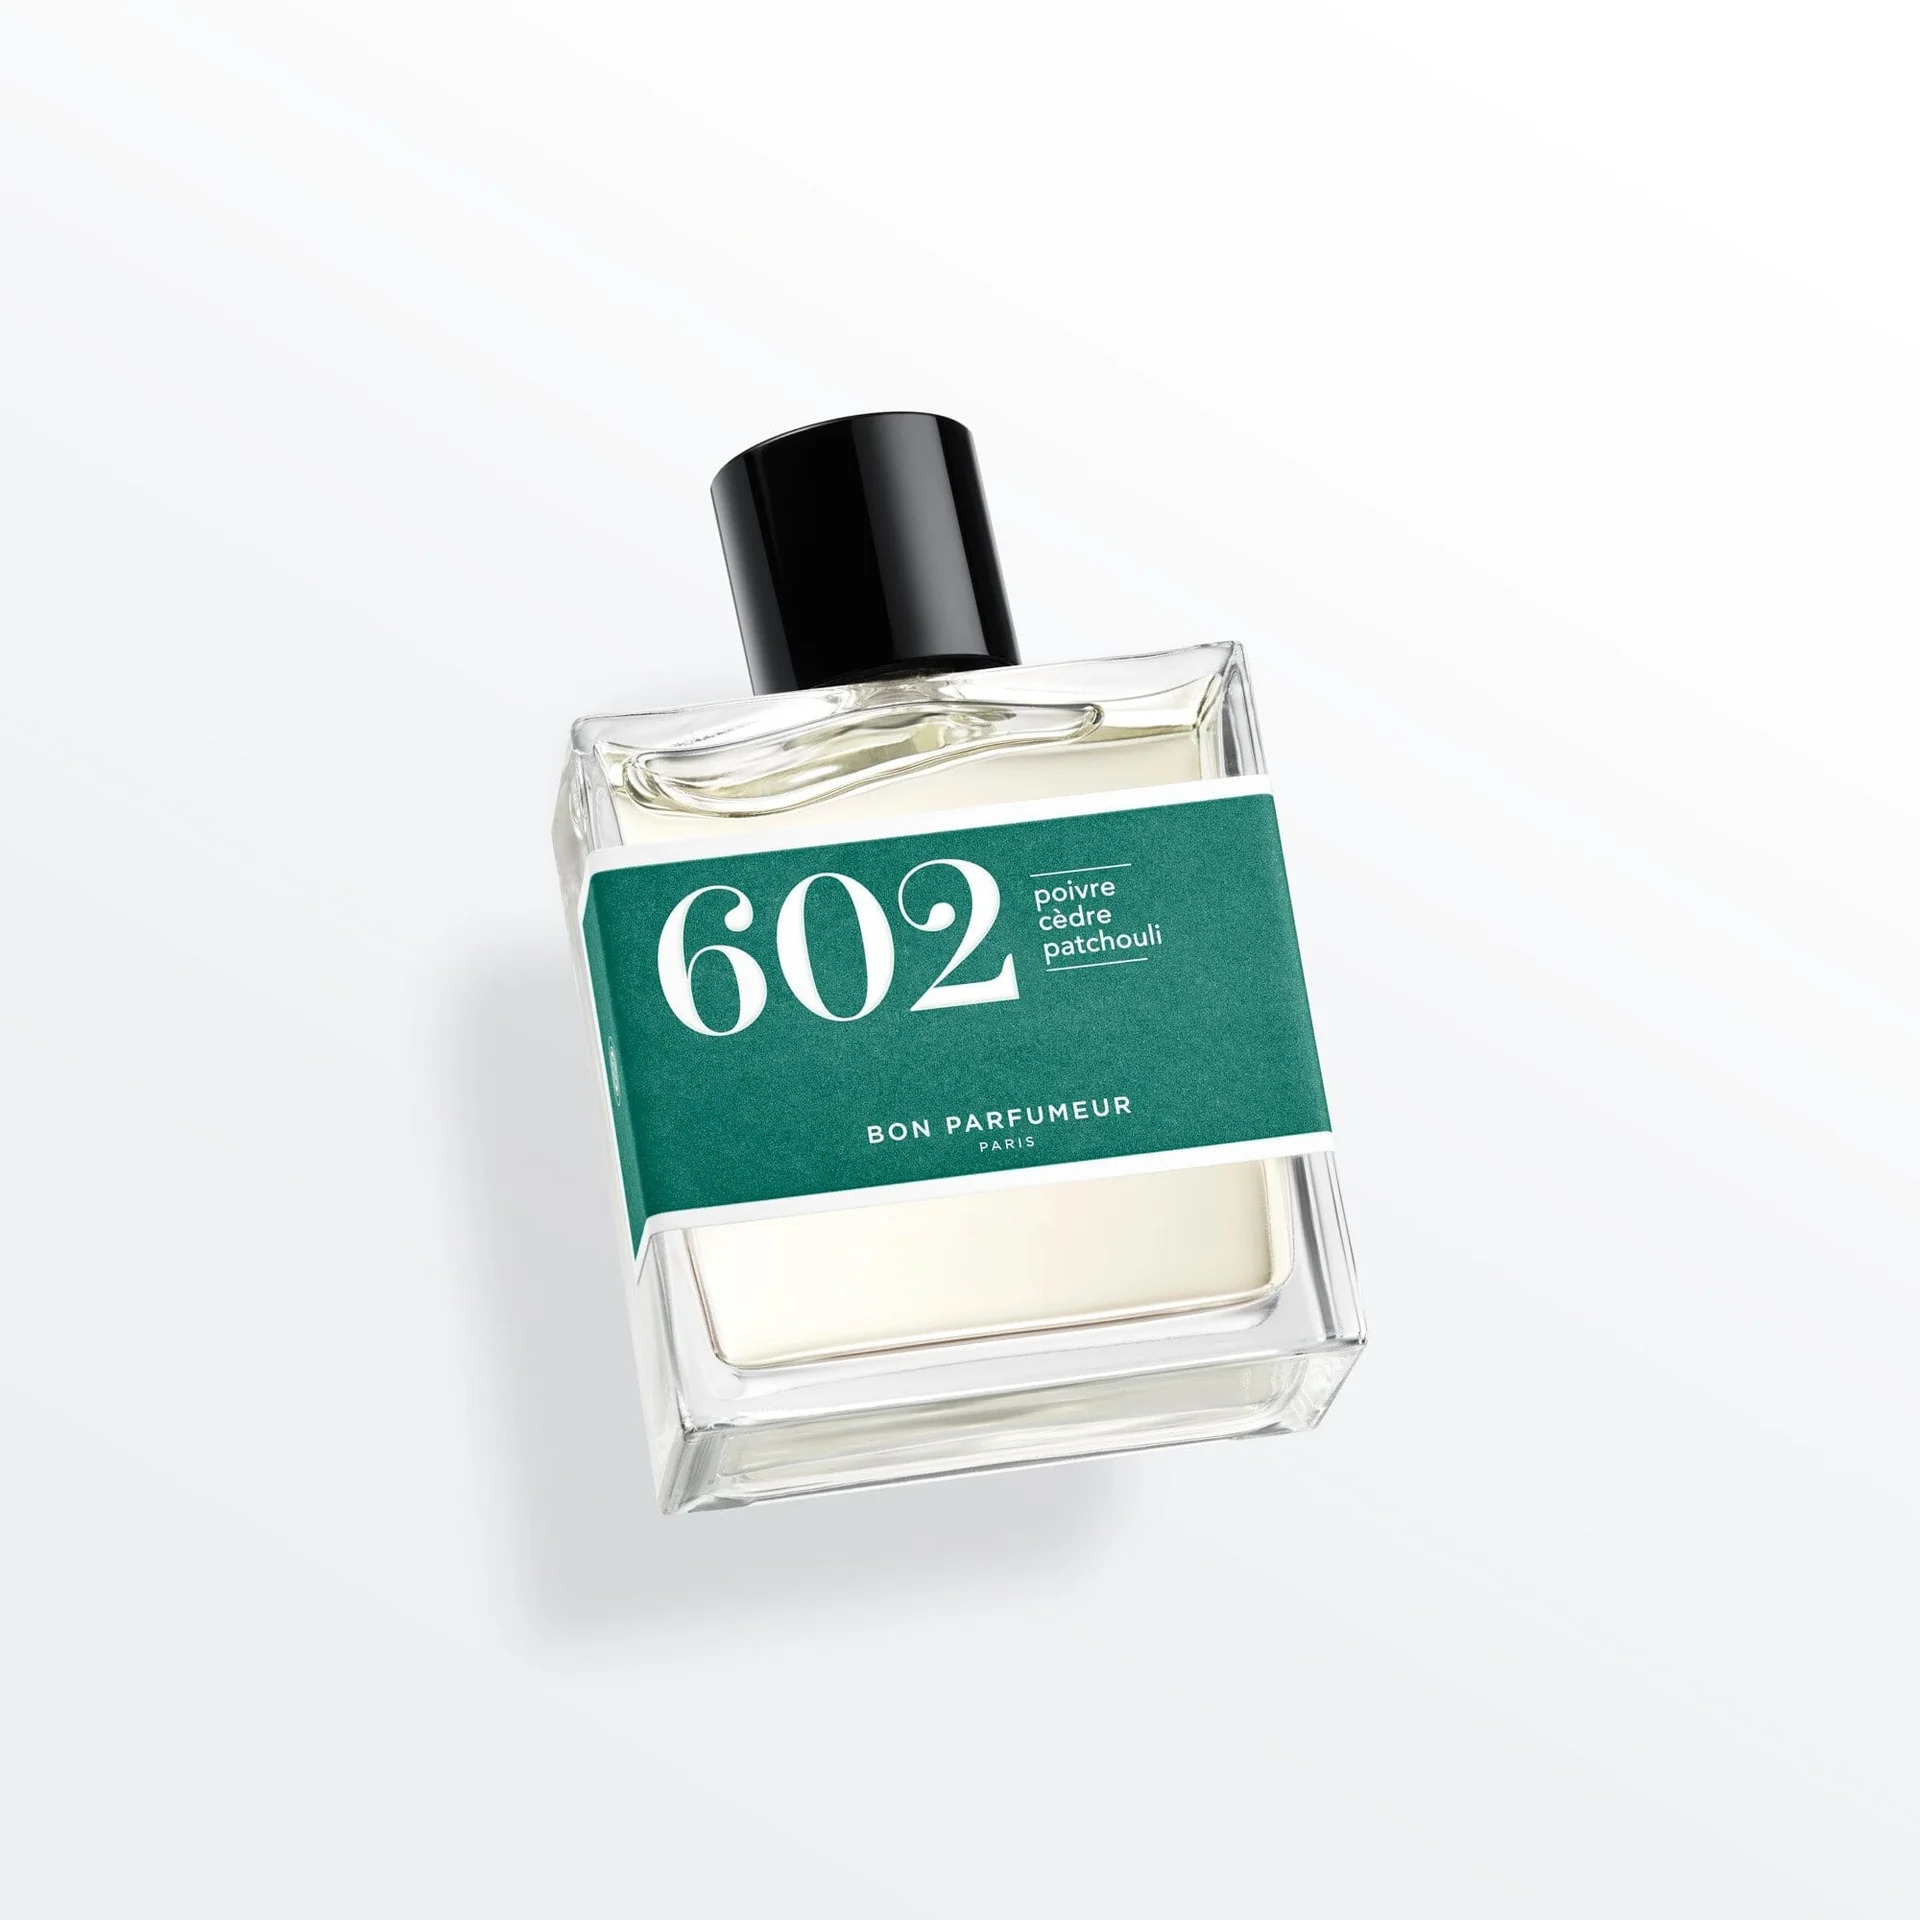 Bon Parfumeur Eau De Parfum 602 - Pepper, Cedar & Patchouli 30ml